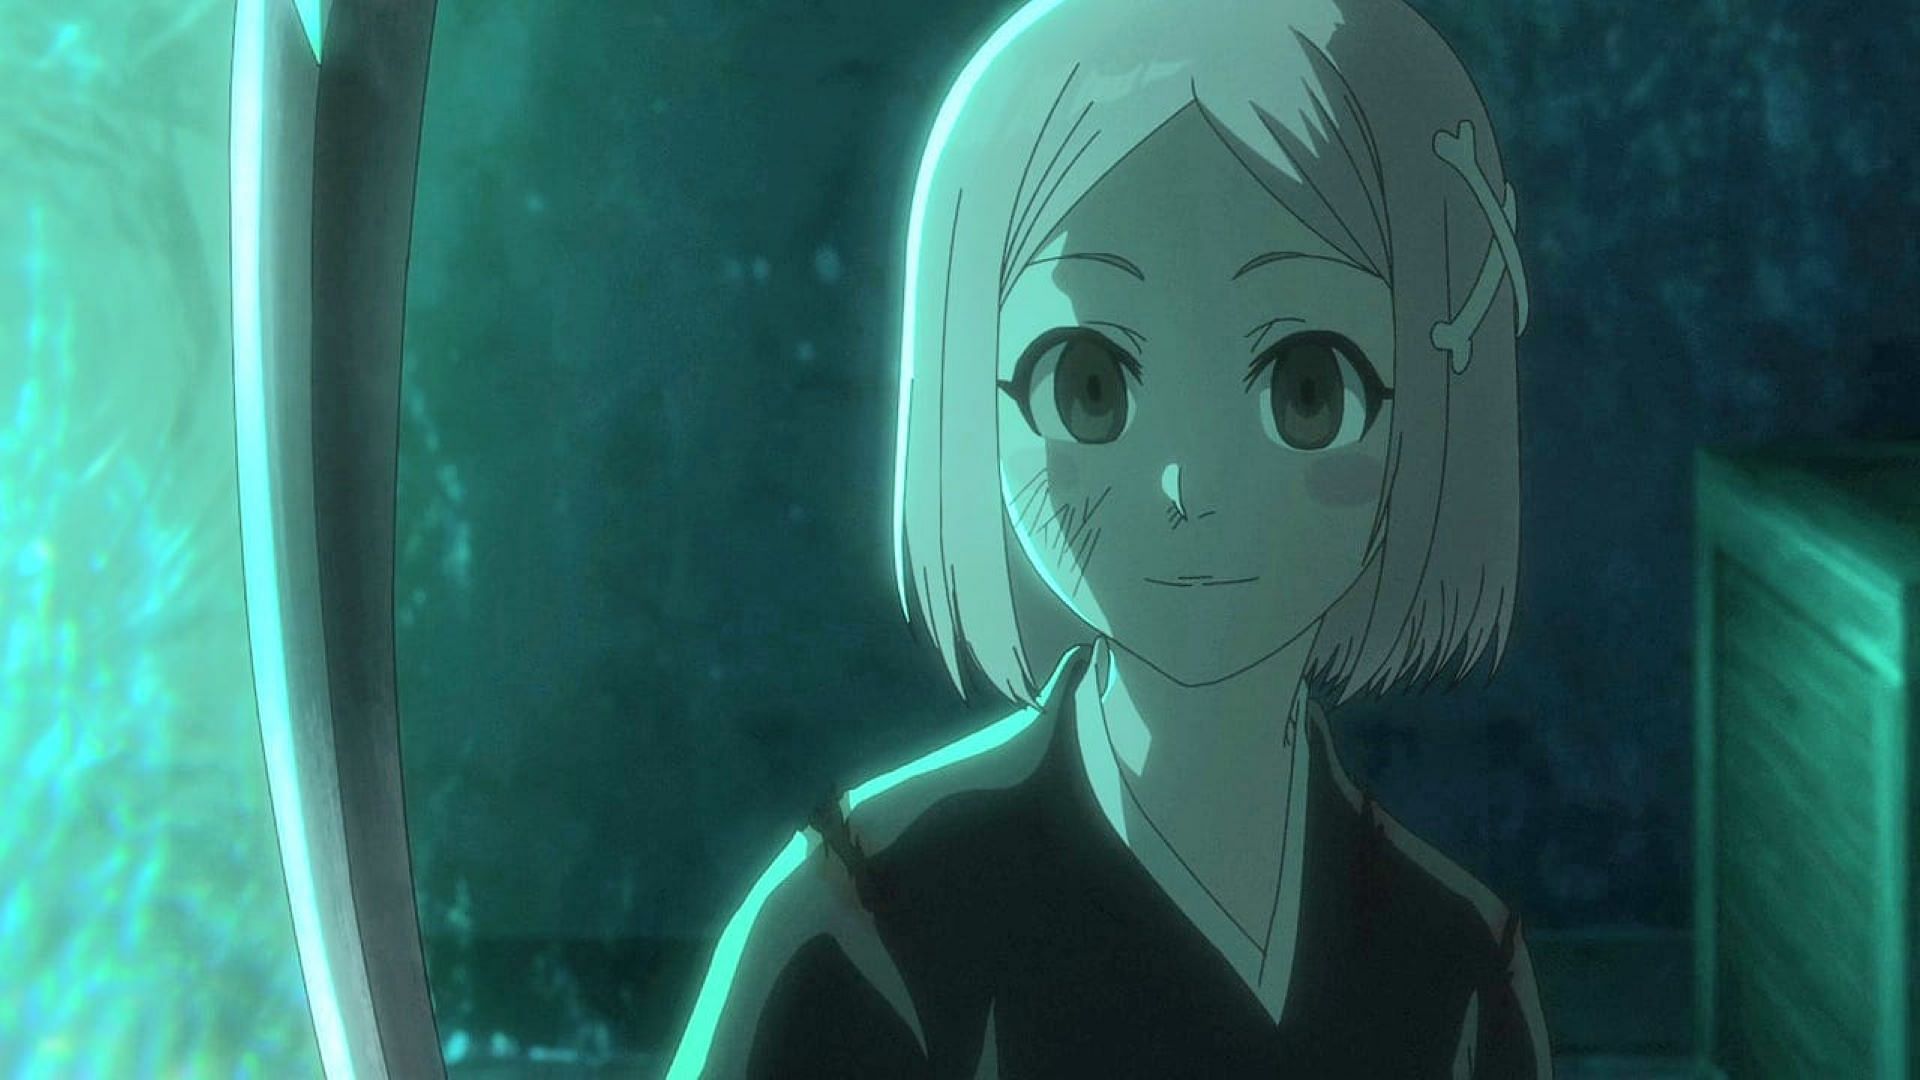 Yachiru Kusajishi as seen in the anime (Image via Pierrot)